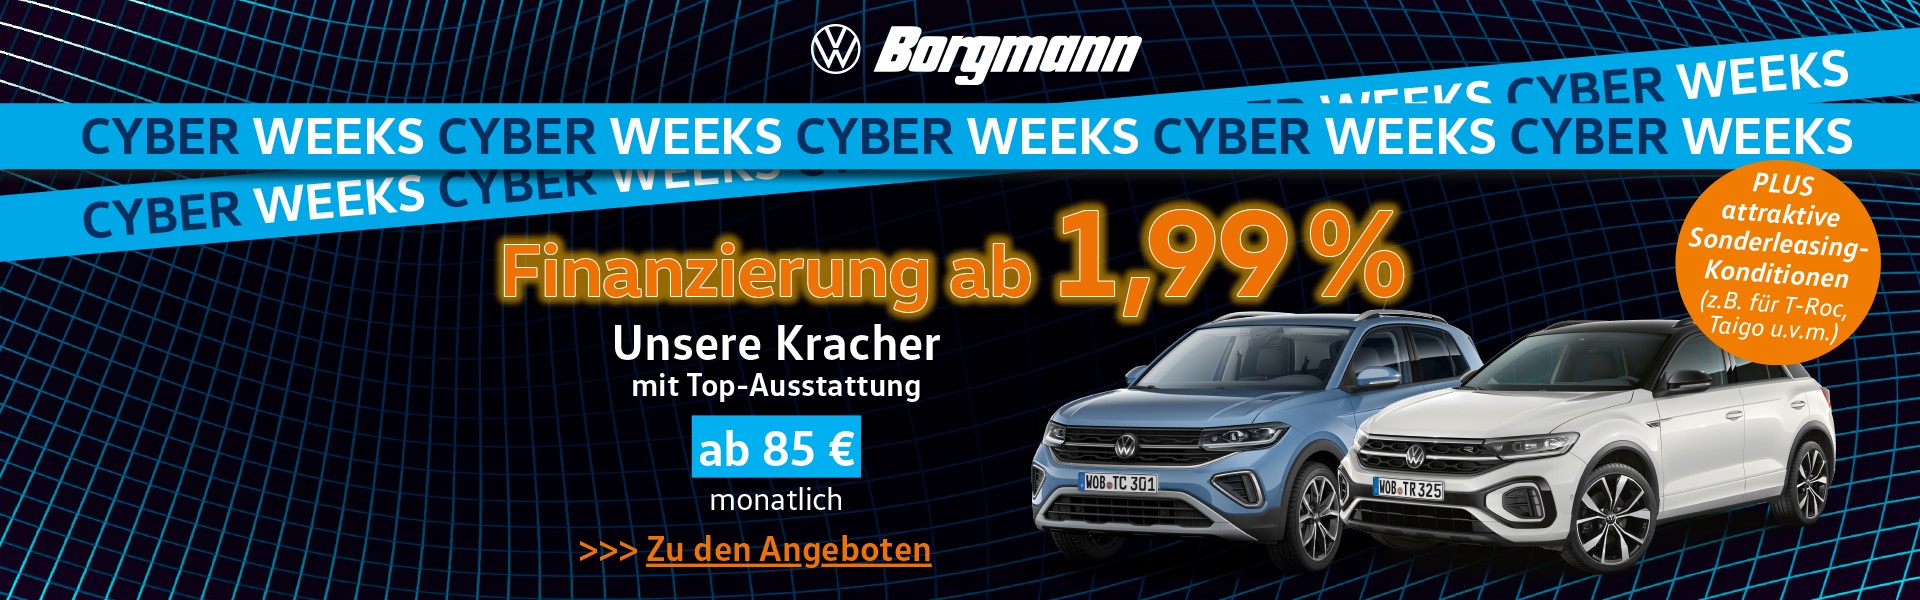 Cyber Week bei VW Borgmann